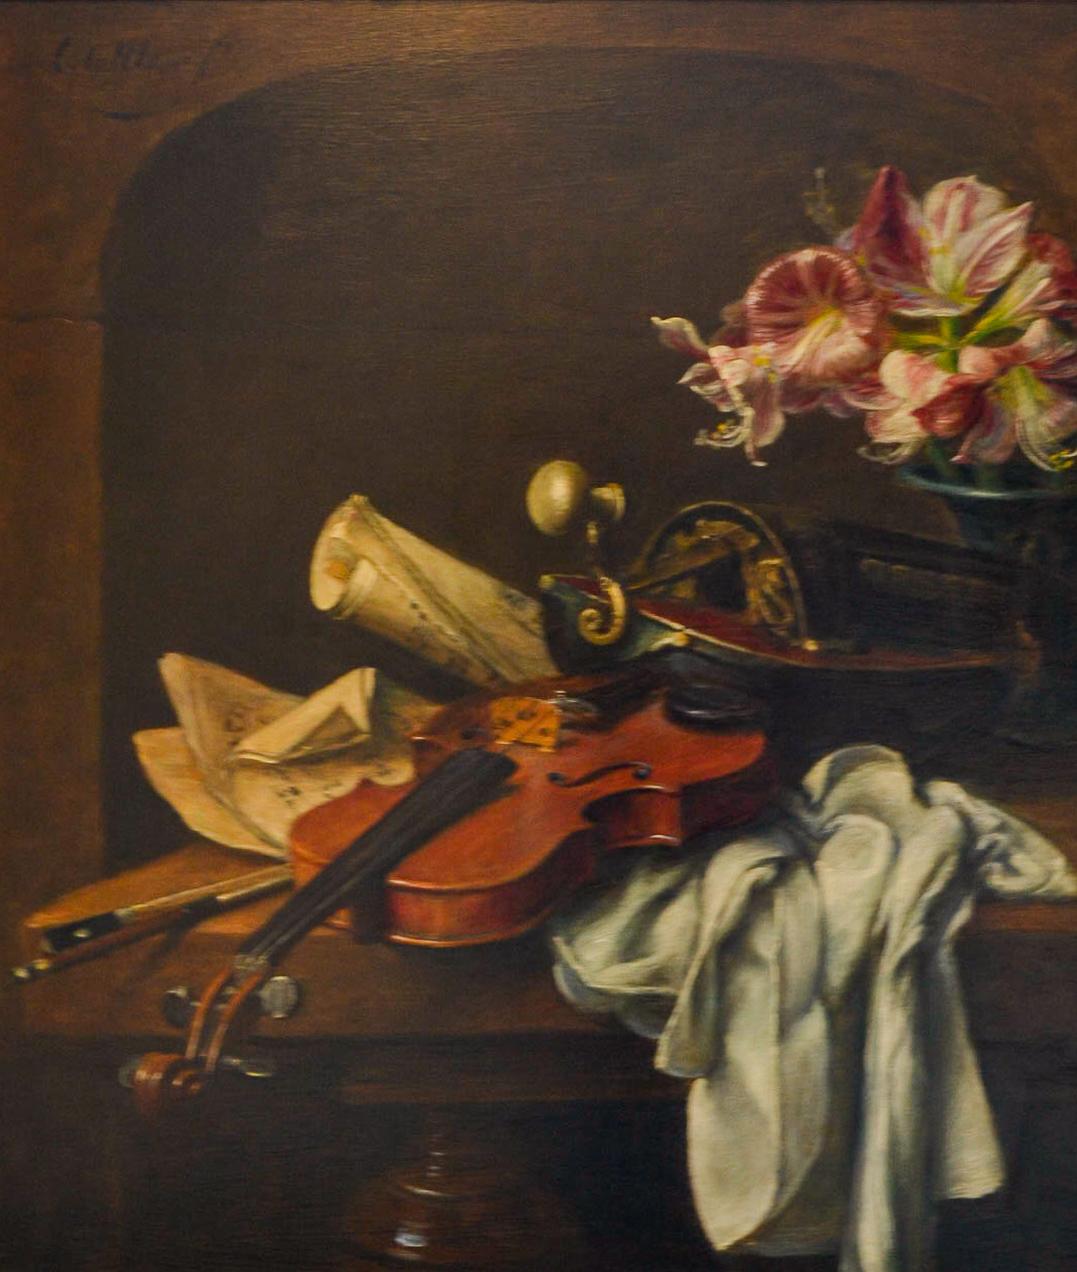 Violon et fleurs - Nature morte hollandaise de style Classic - Painting de Cornelis Le Mair